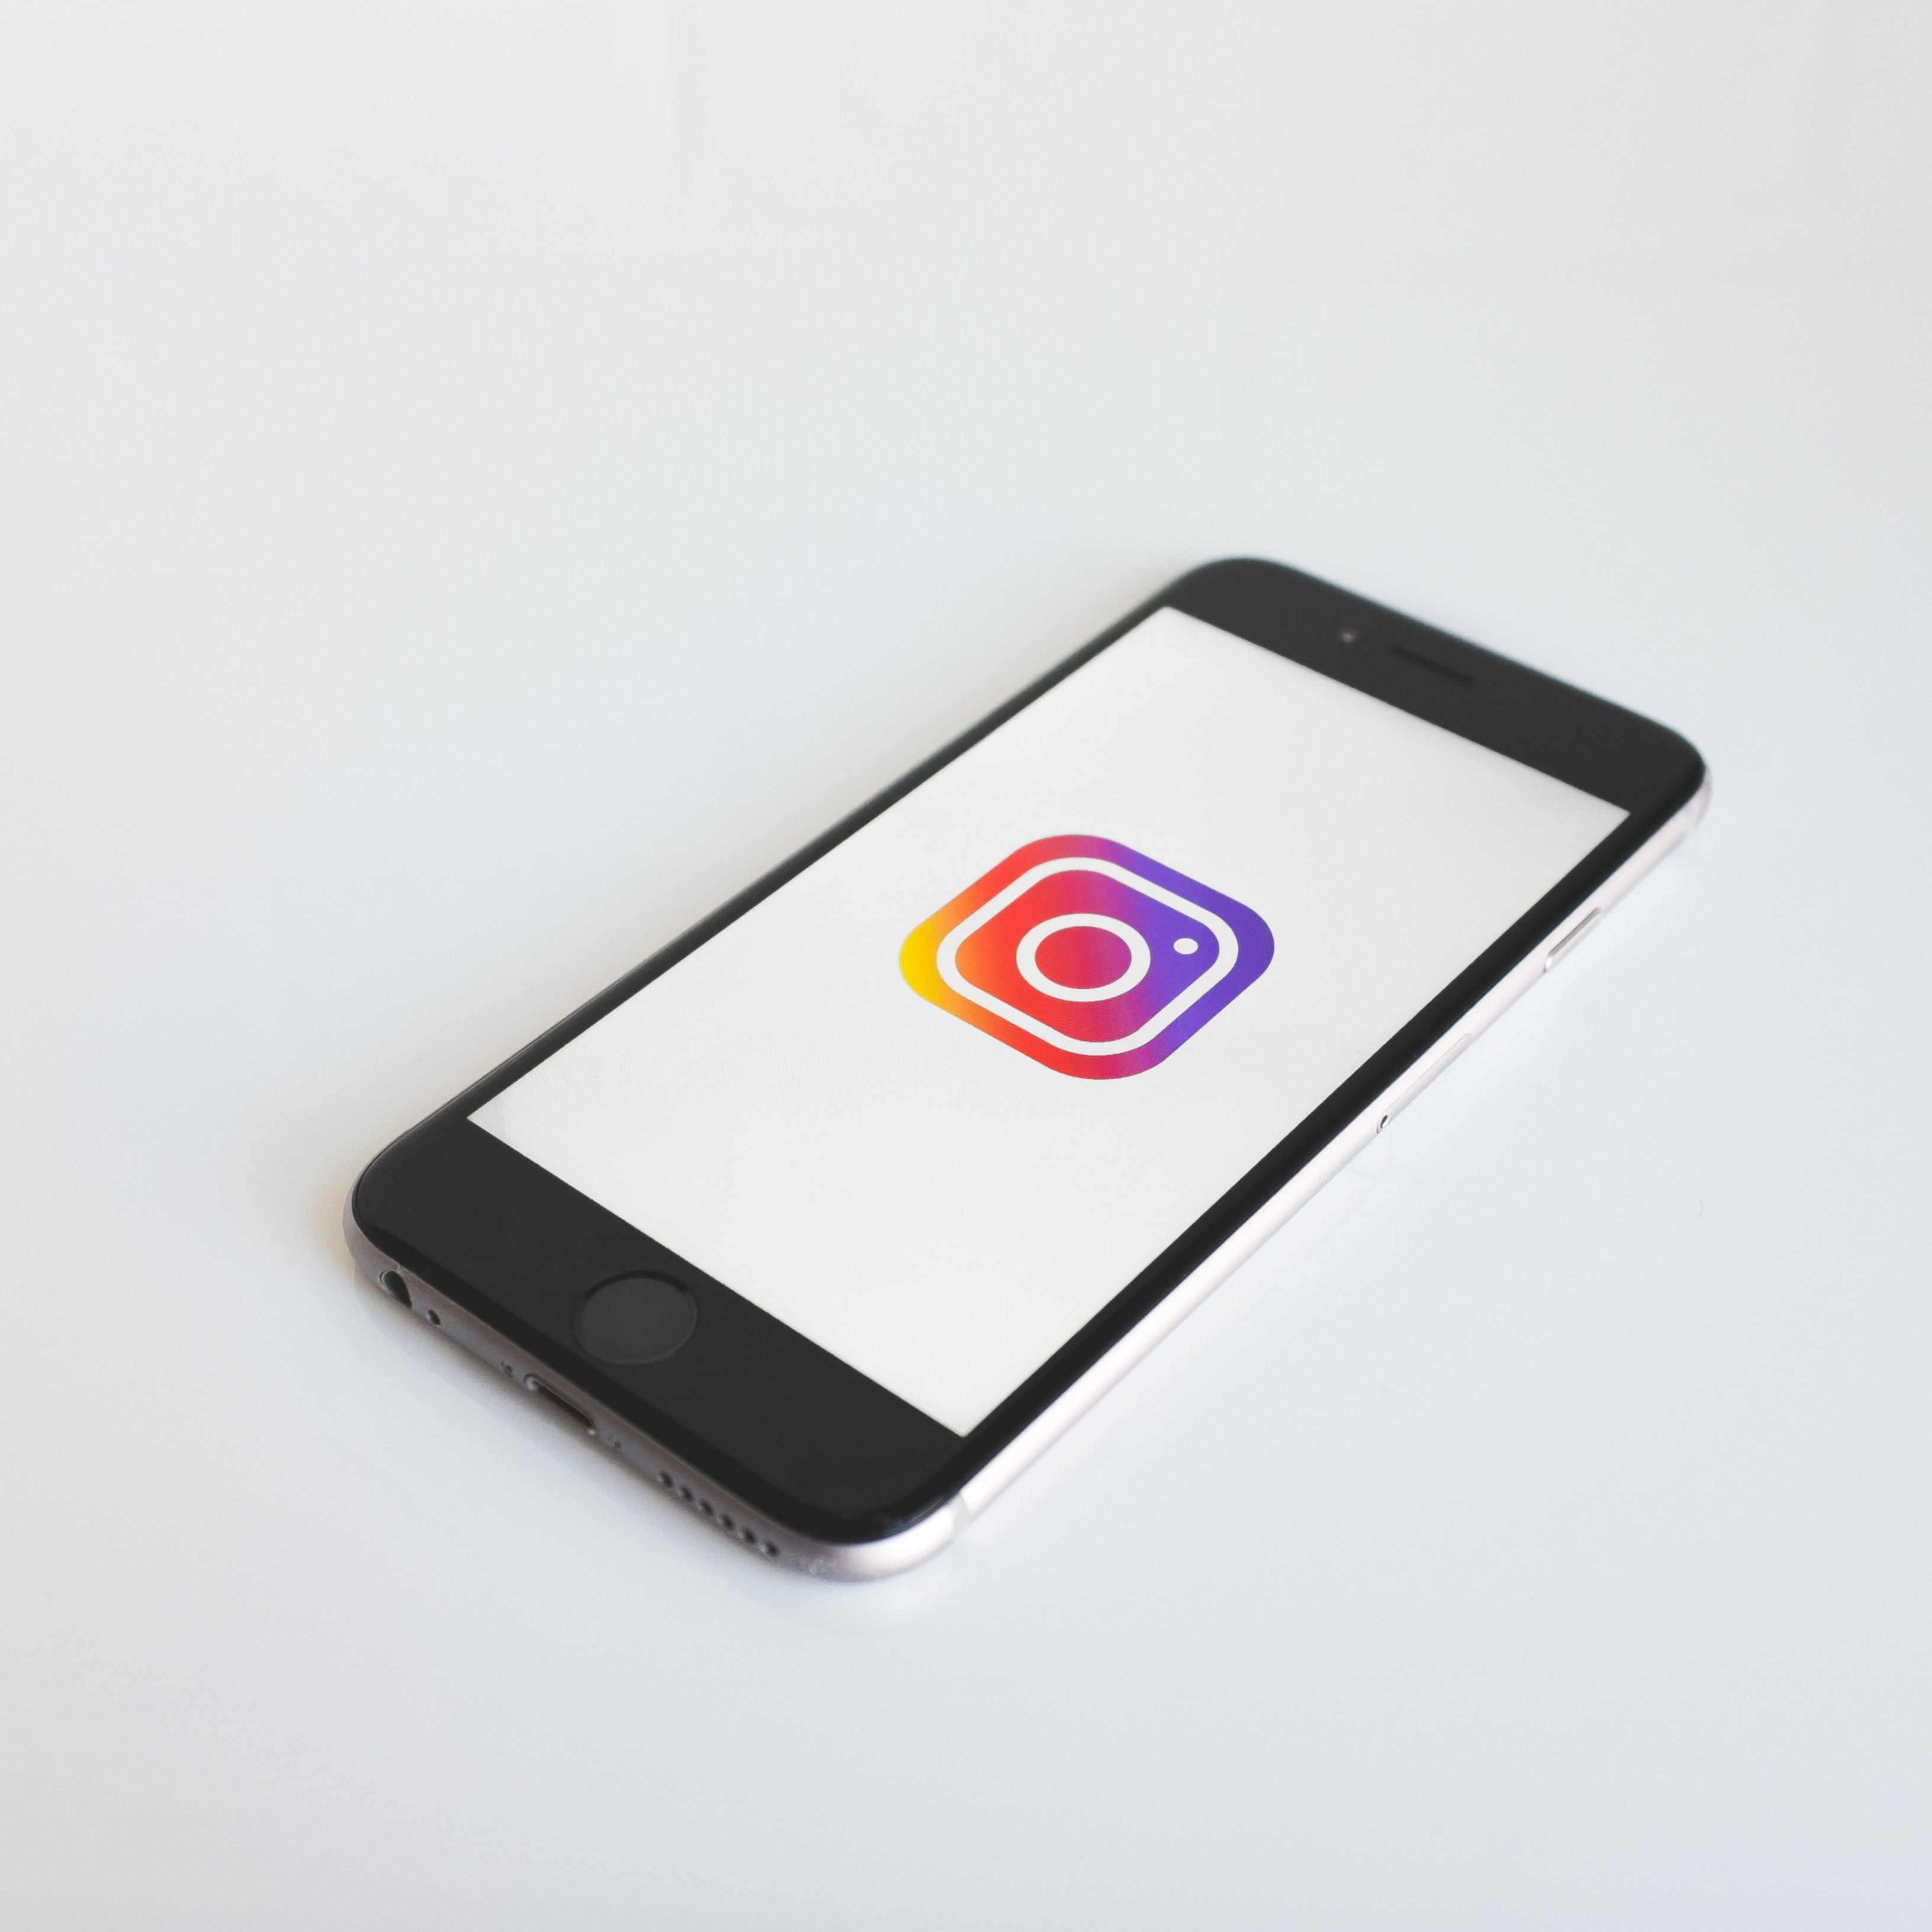 Cómo evitar ser añadido a grupos de Instagram que no deseas